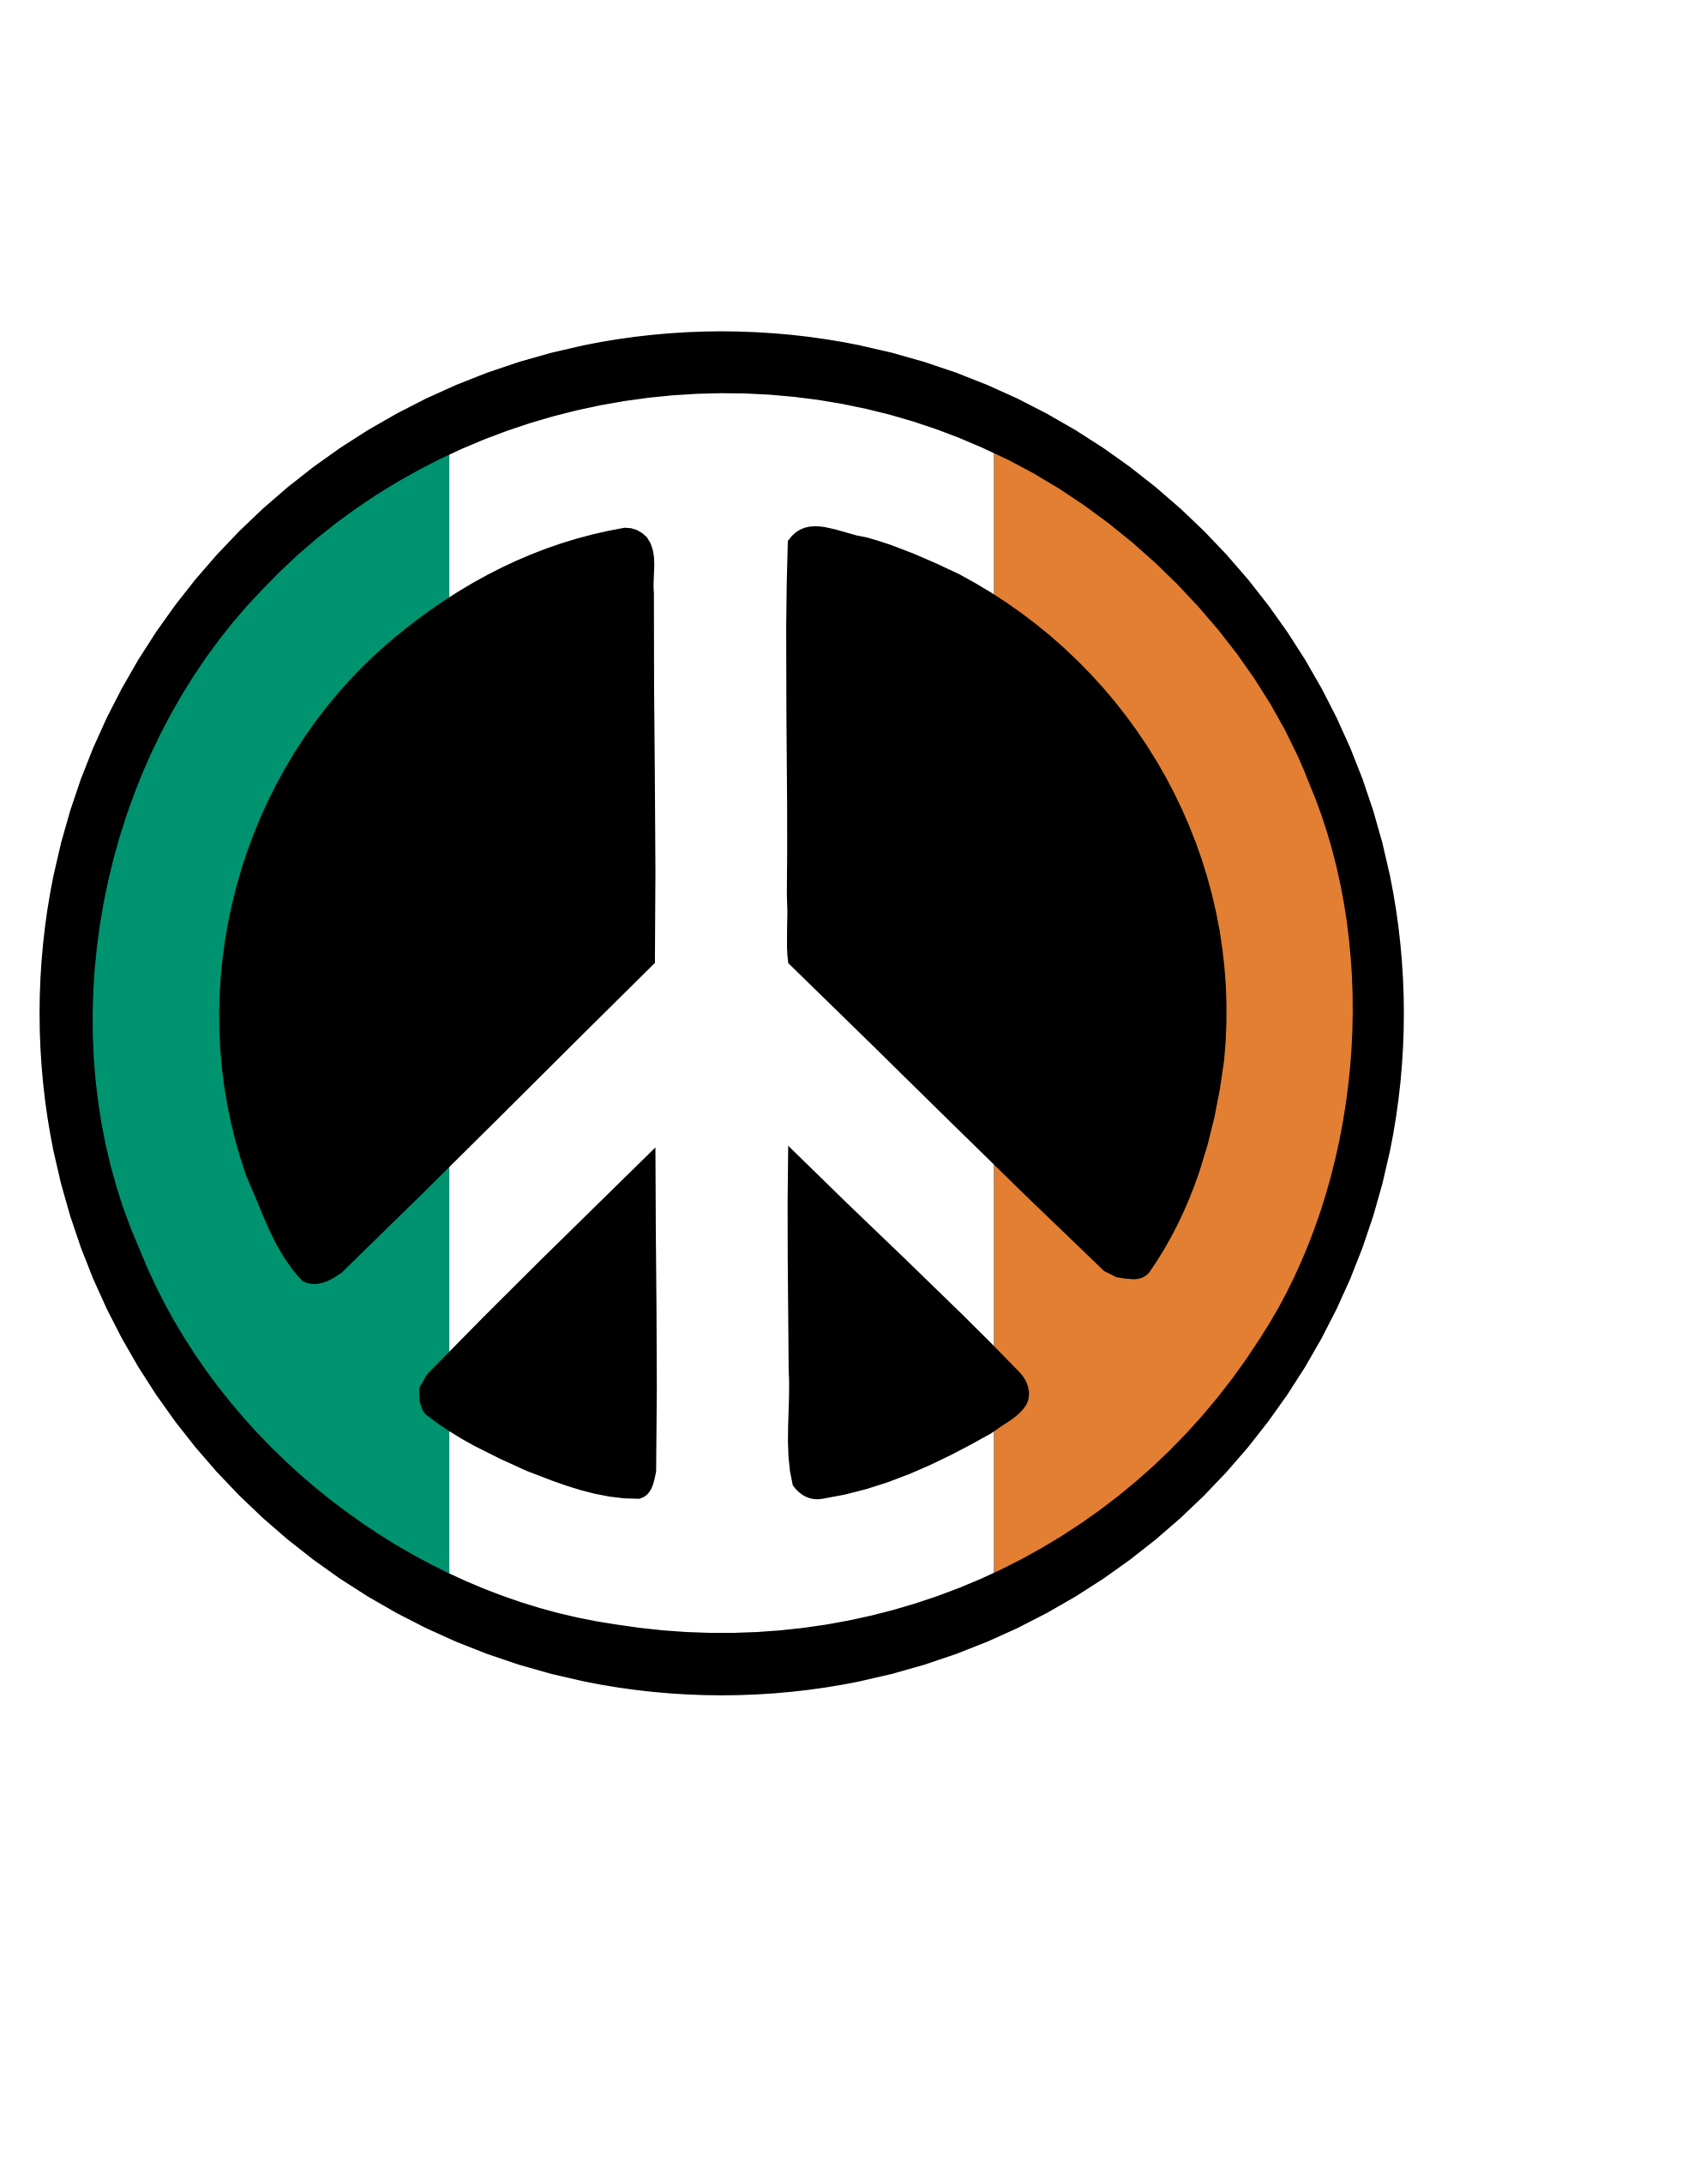 Irish Symbols Clipart